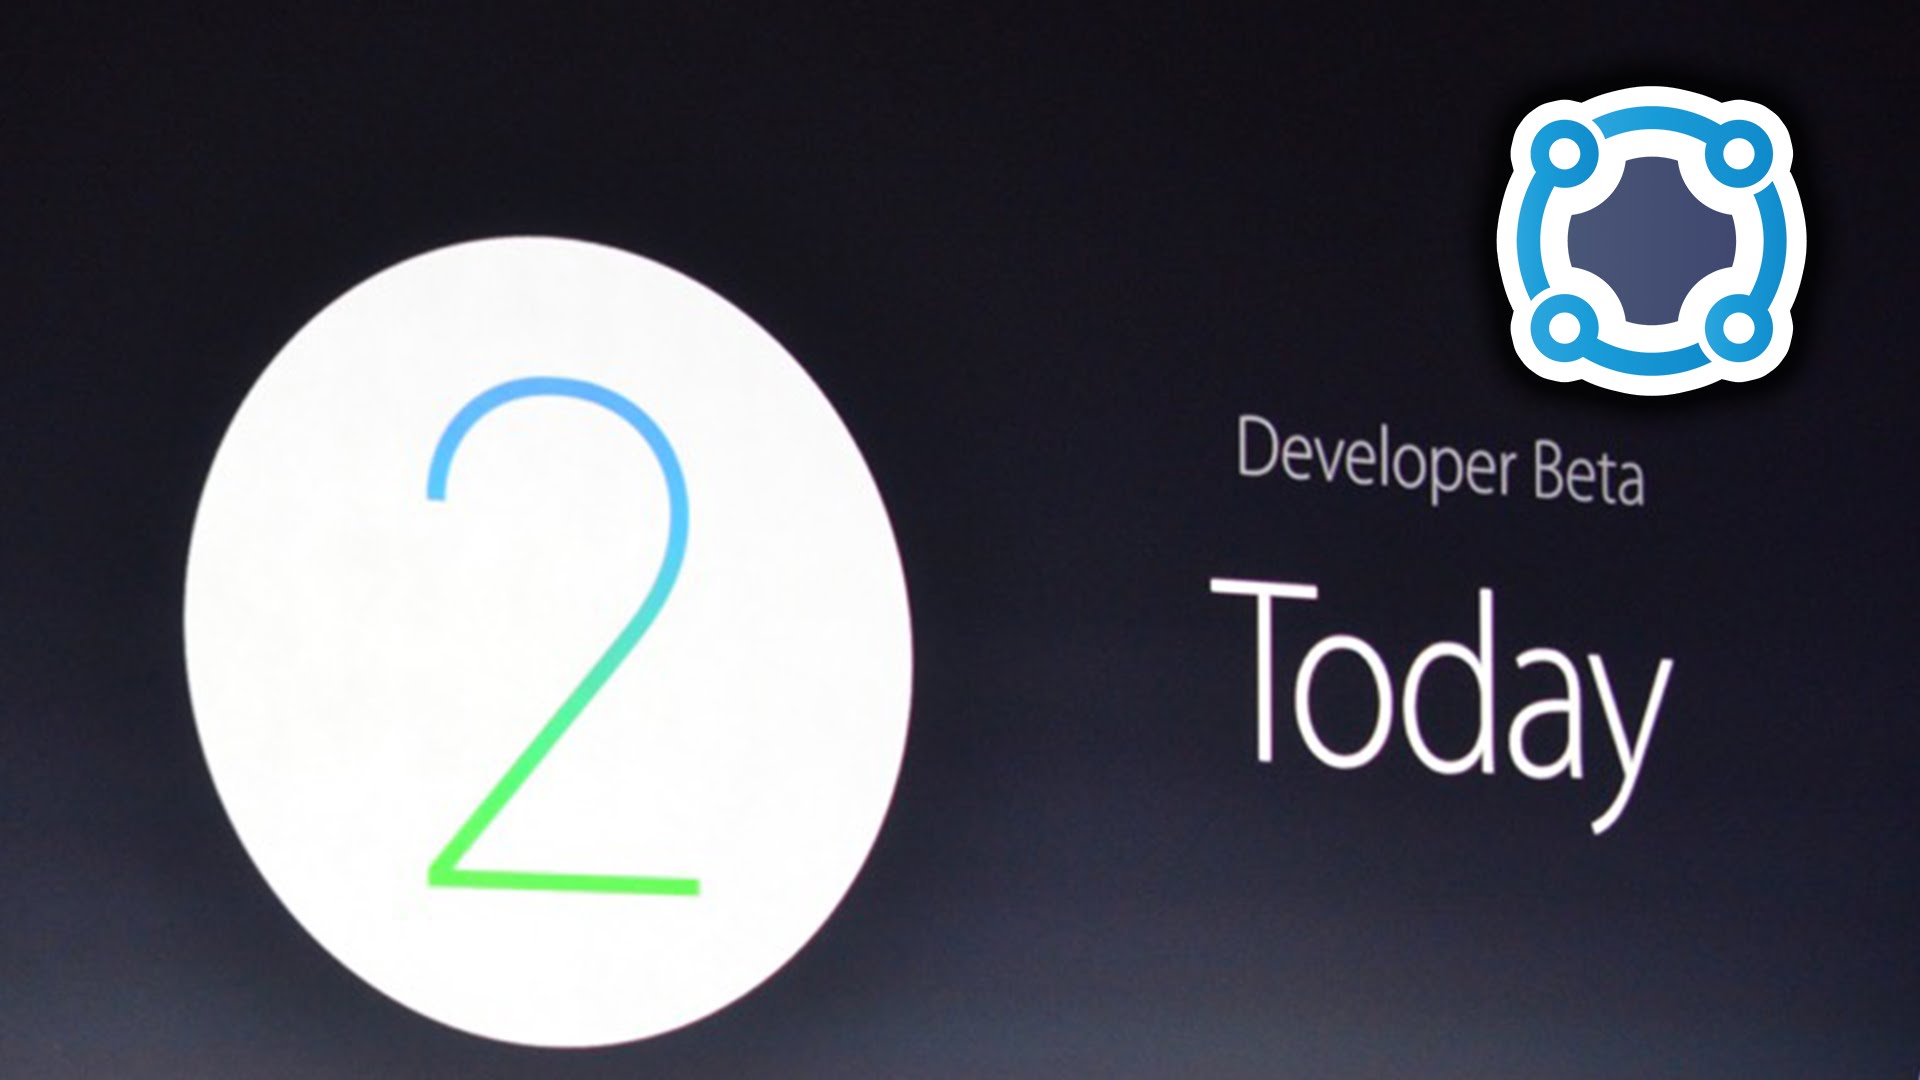 Apple watchOS 2 - WWDC 2015 Keynote Recap